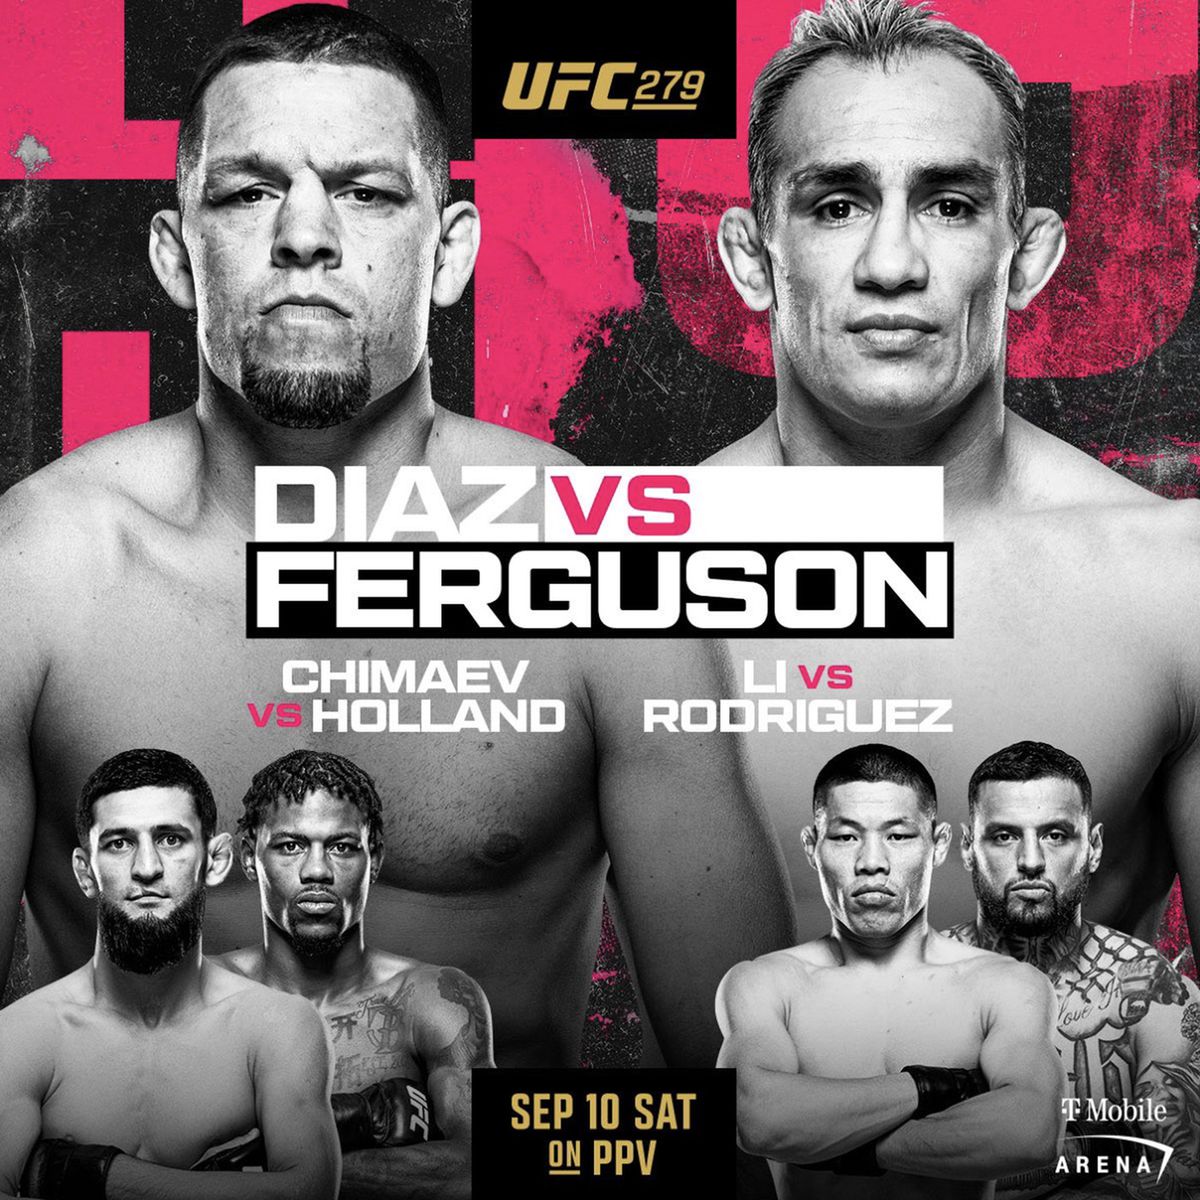 Ver UFC 279: Nate Diaz vs. Tony Ferguson, Khamzat Chimaev vs. Kevin Holland, transmisión en vivo online, tarjeta de pelea, hora de inicio, horario de TV